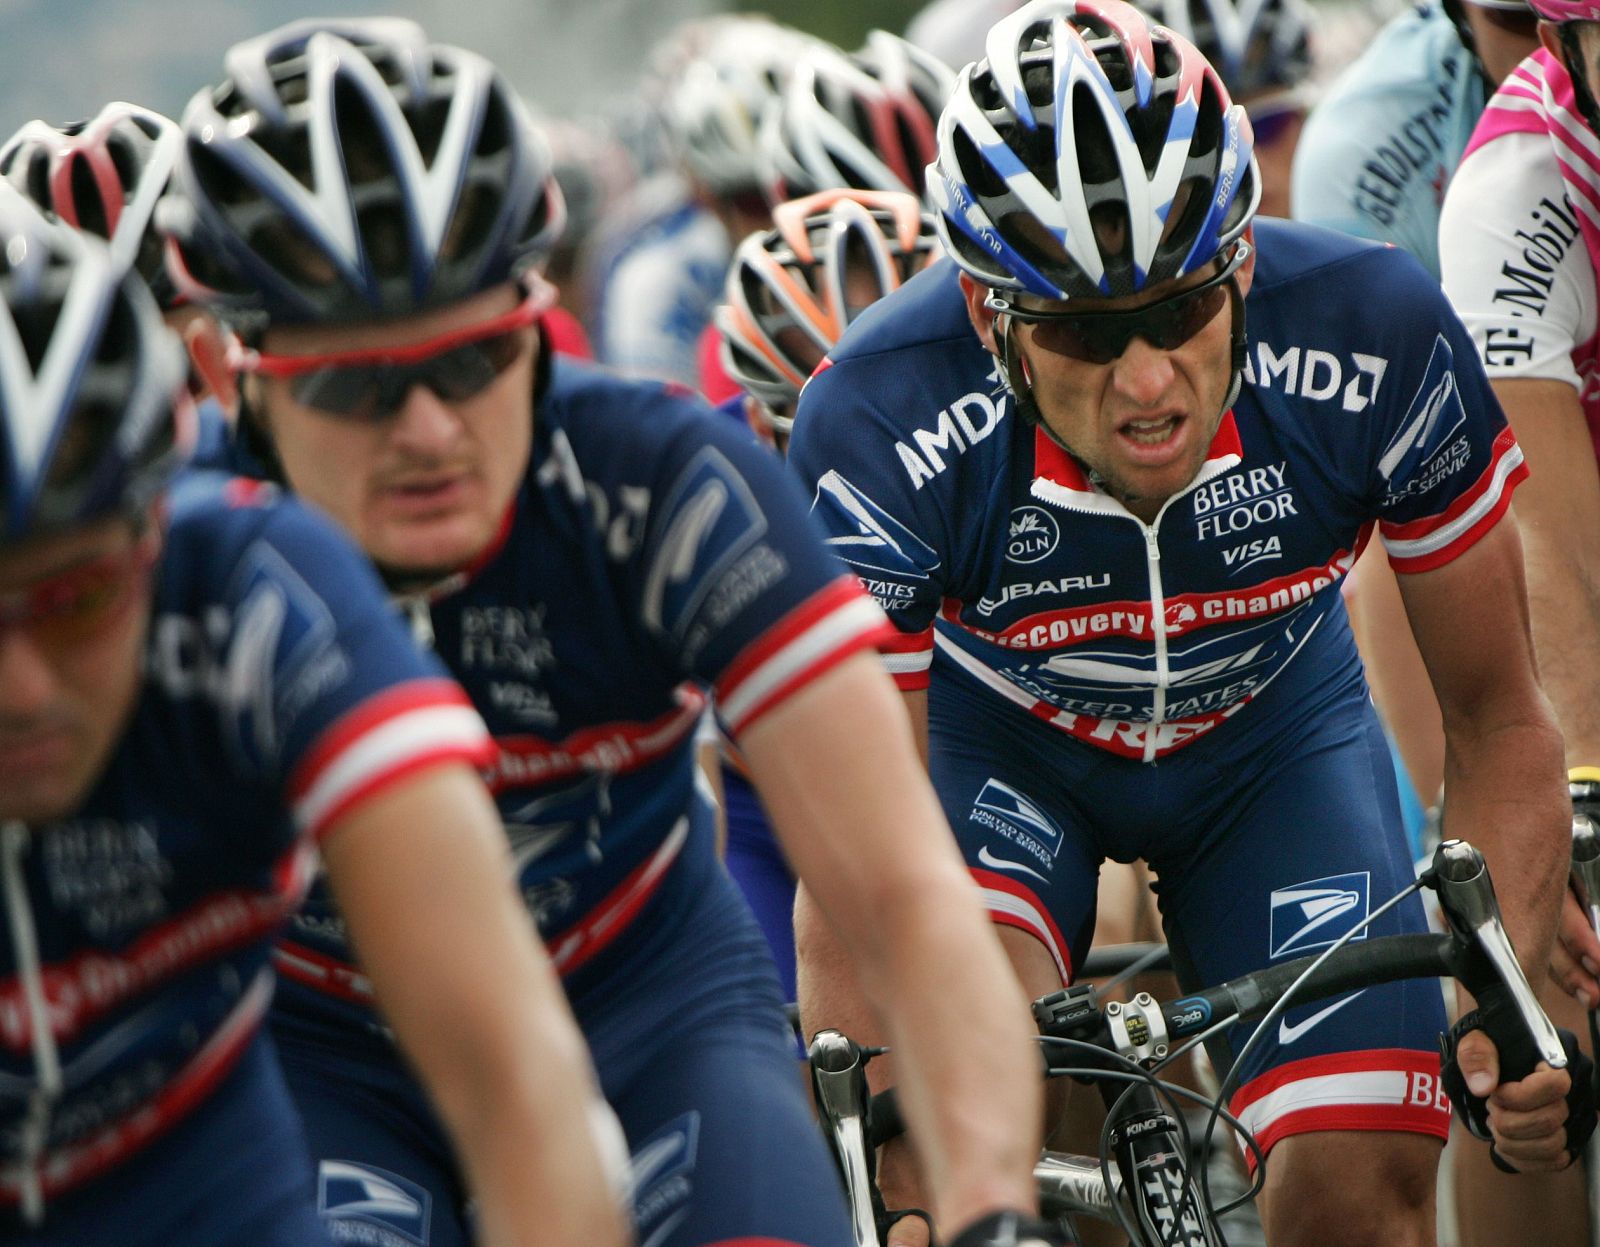 Lance Armstrong, en una imagen de 2004, junto a algunos de sus compañeros del US Postal, como Floyd Landis